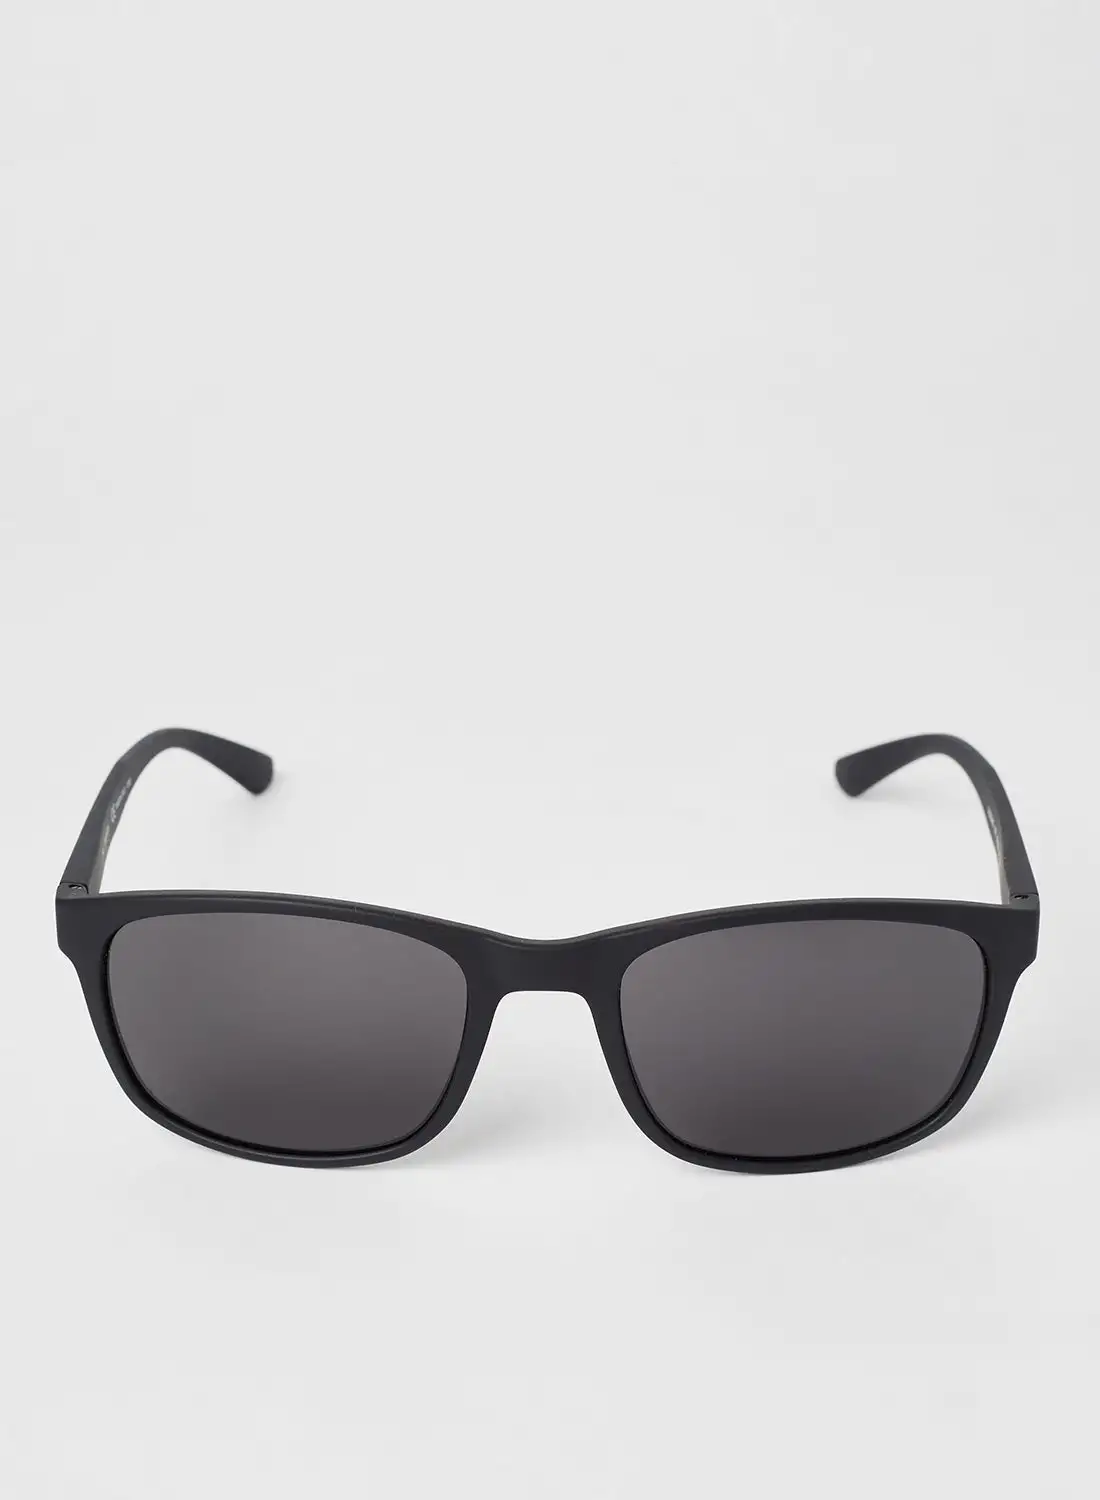 CALVIN KLEIN Men's Full Rimmed Rectangular Frame Sunglasses - Lens Size: 56 mm